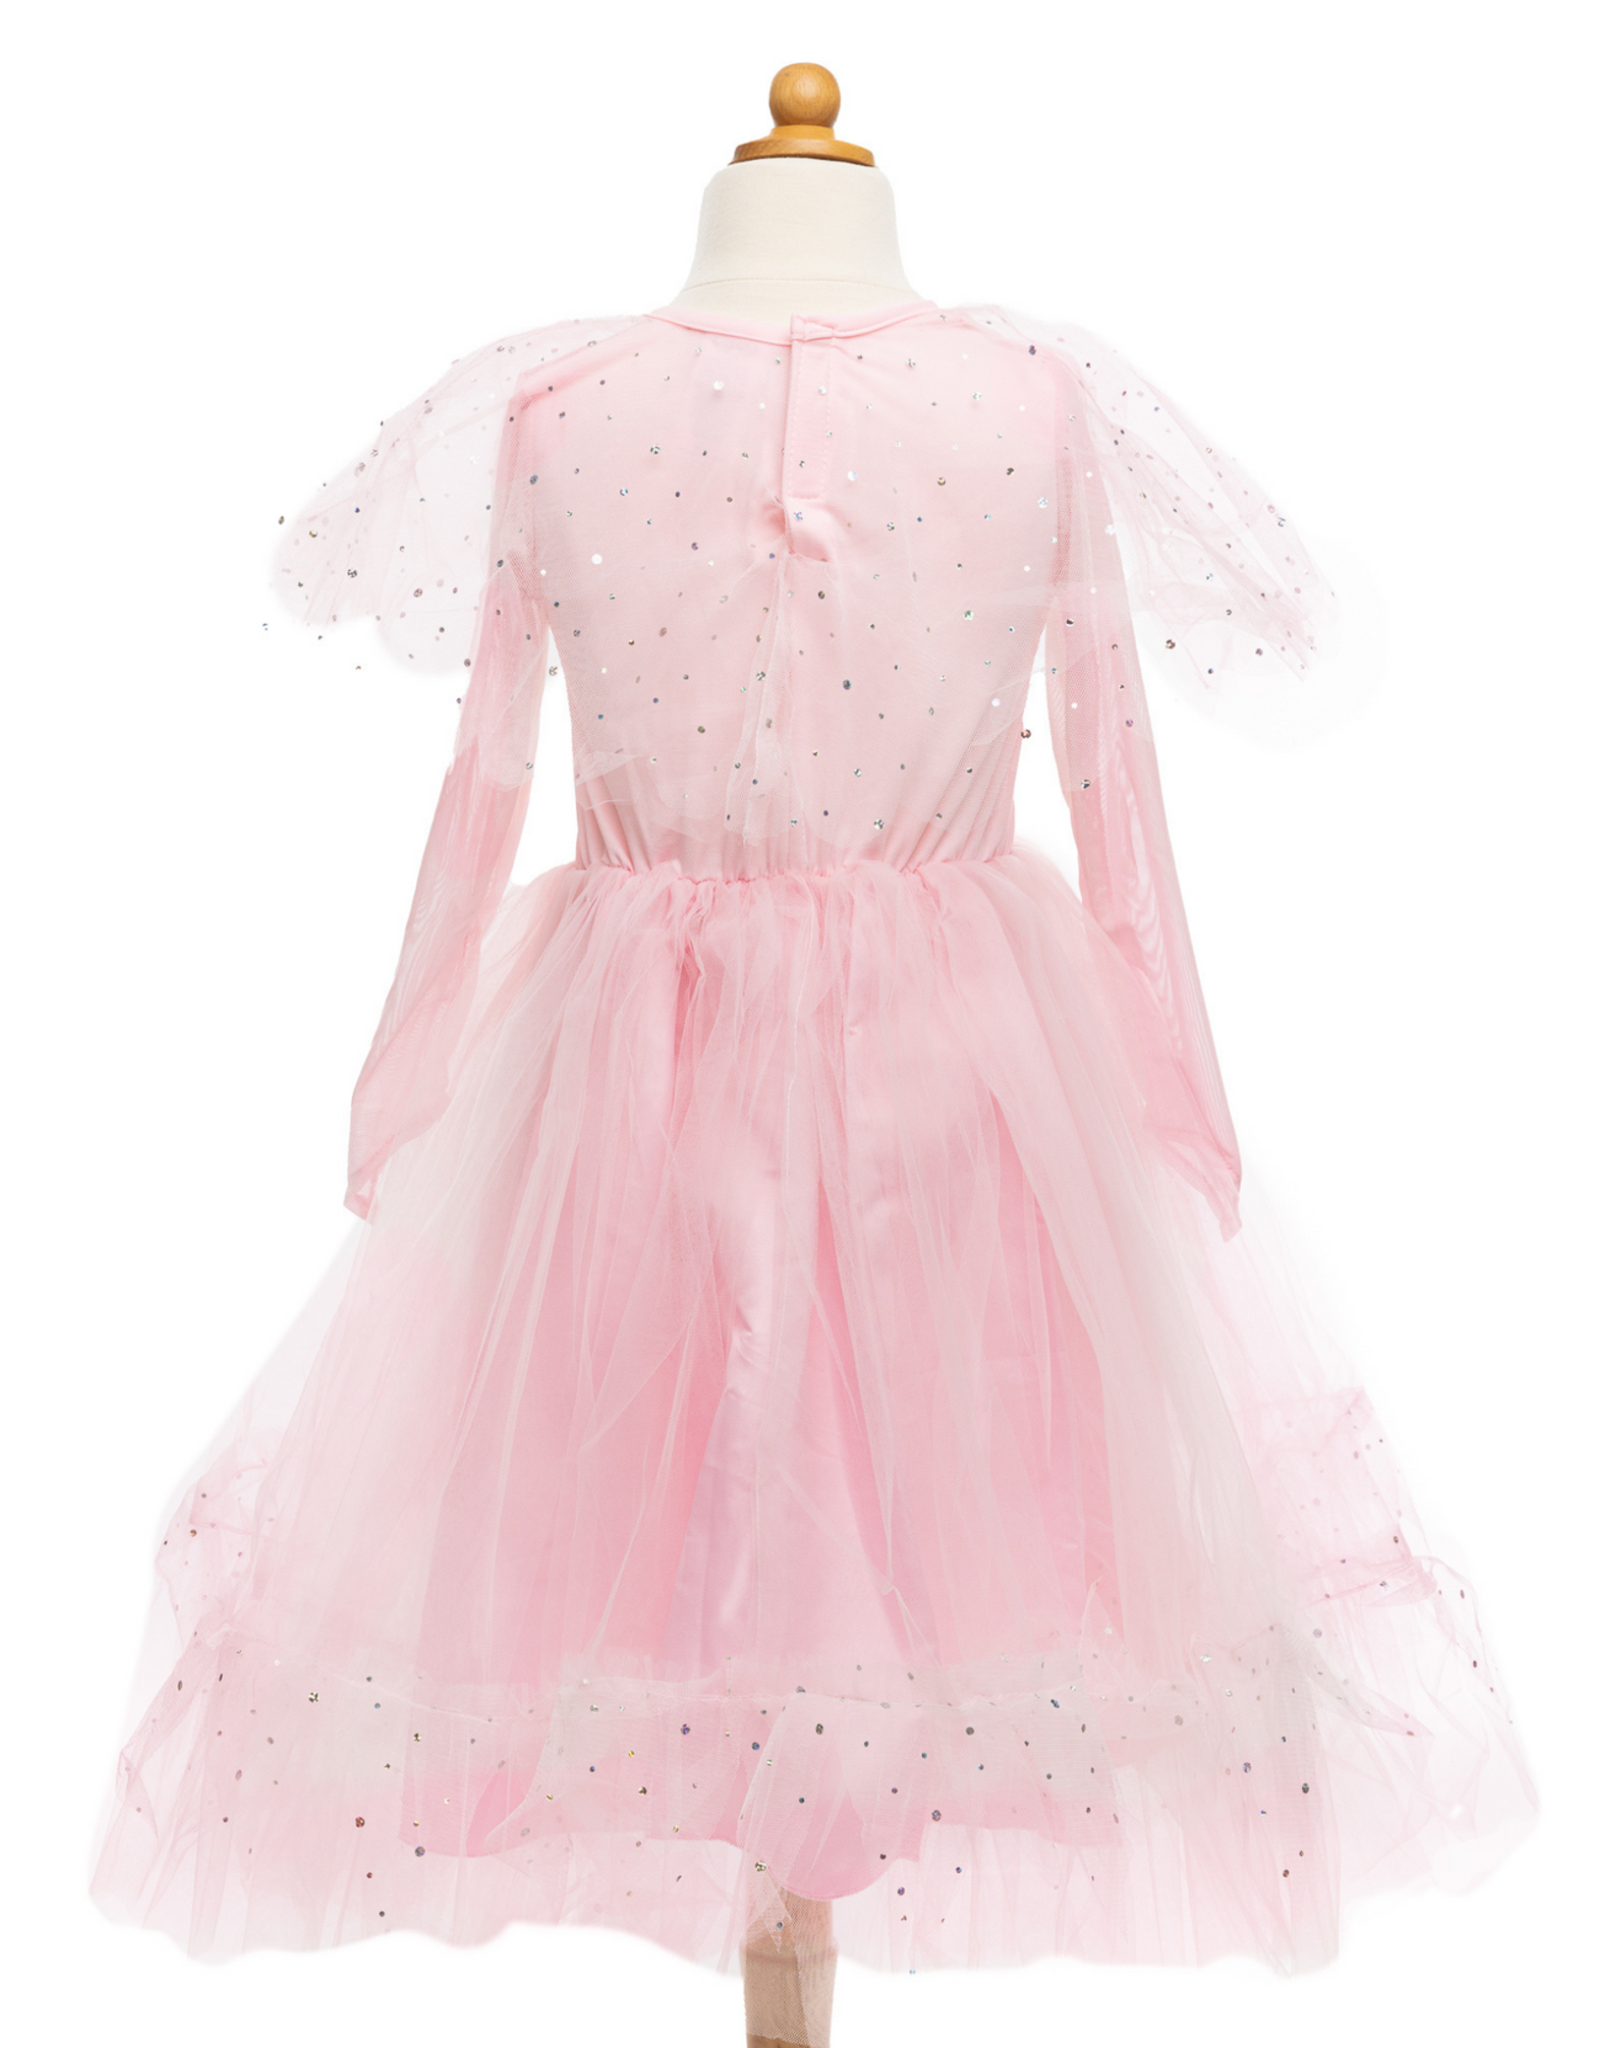 GreatPretenders 333 Elegant in Pink Dress